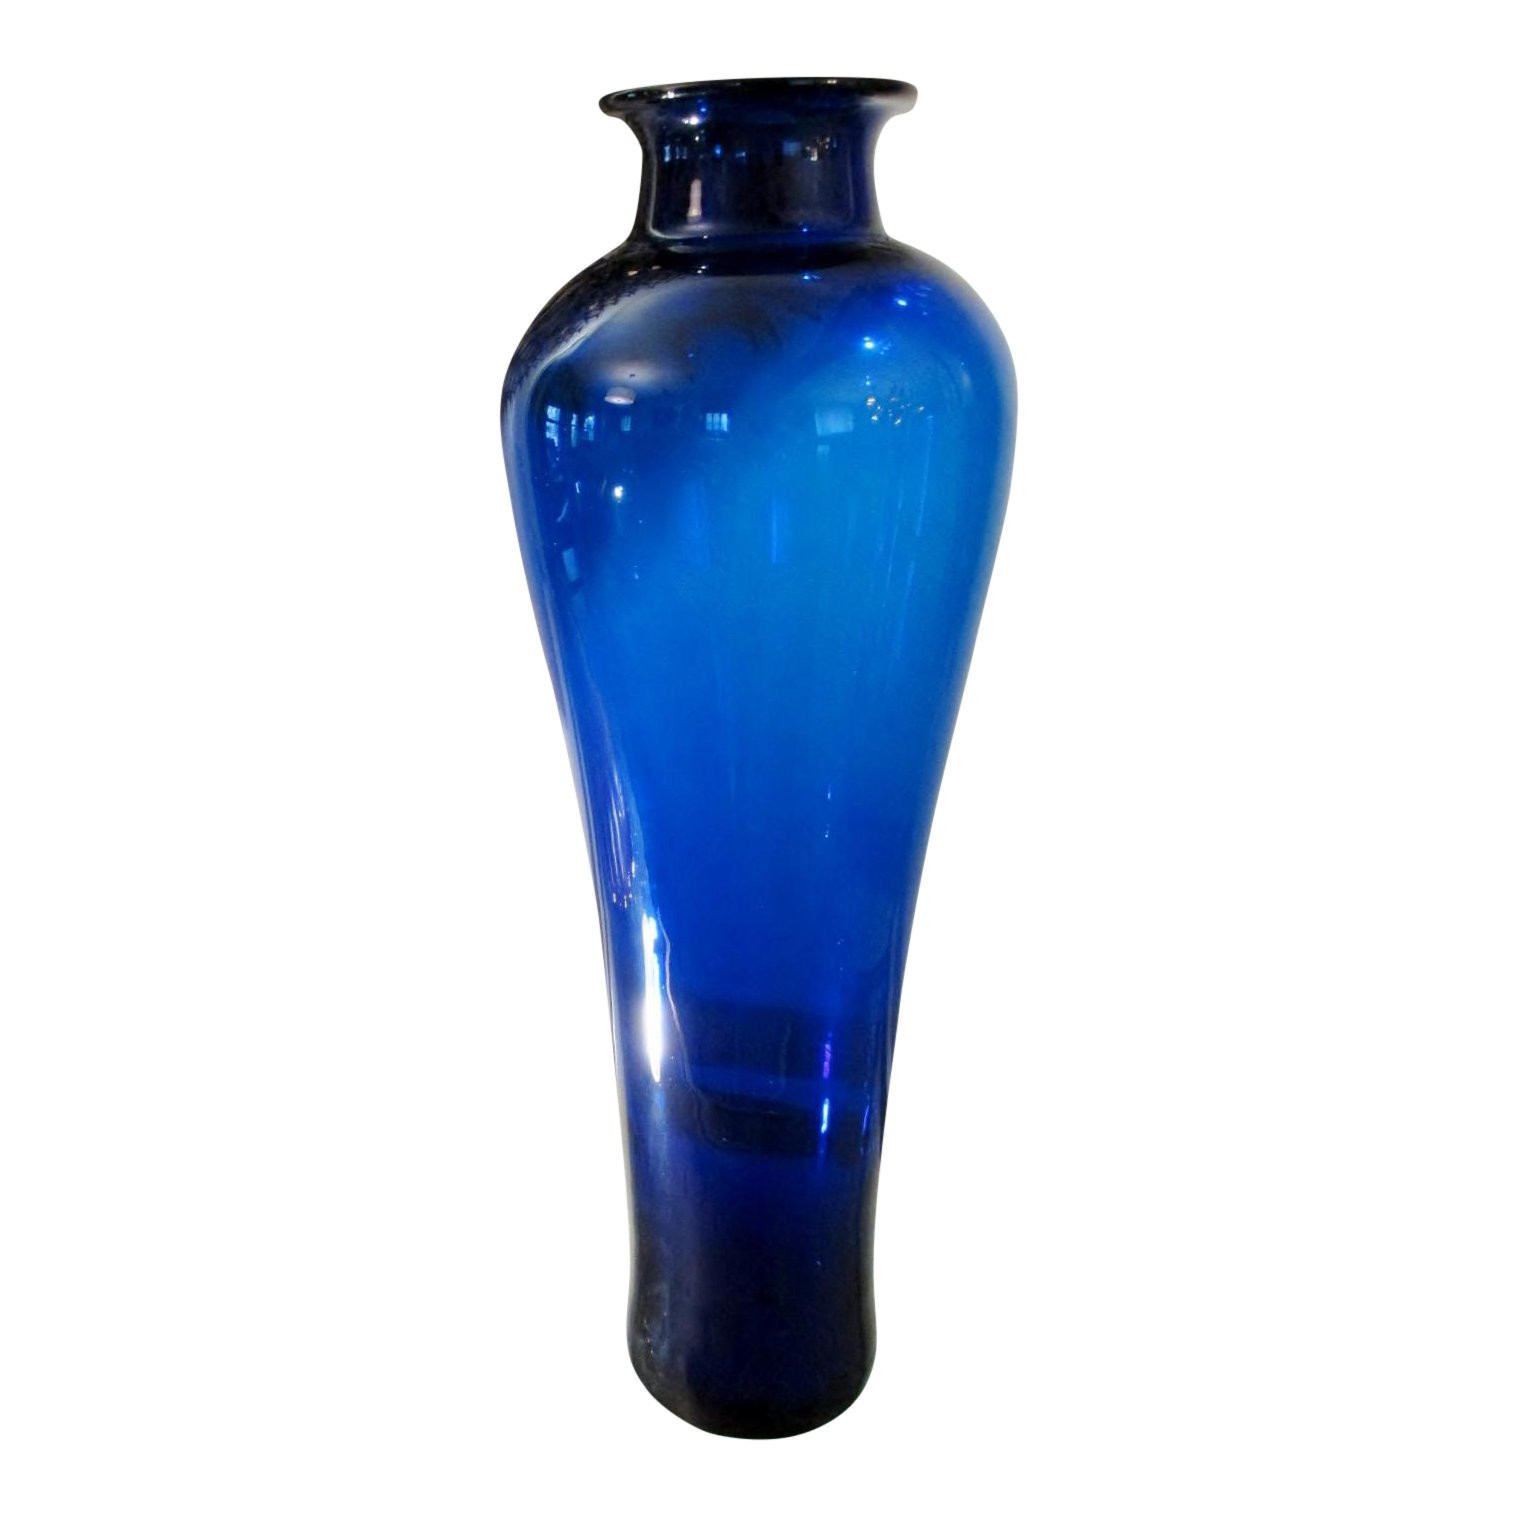 blenko handcraft vase of chinese blenko glass vase chairish within chinese blenko glass vase 3351